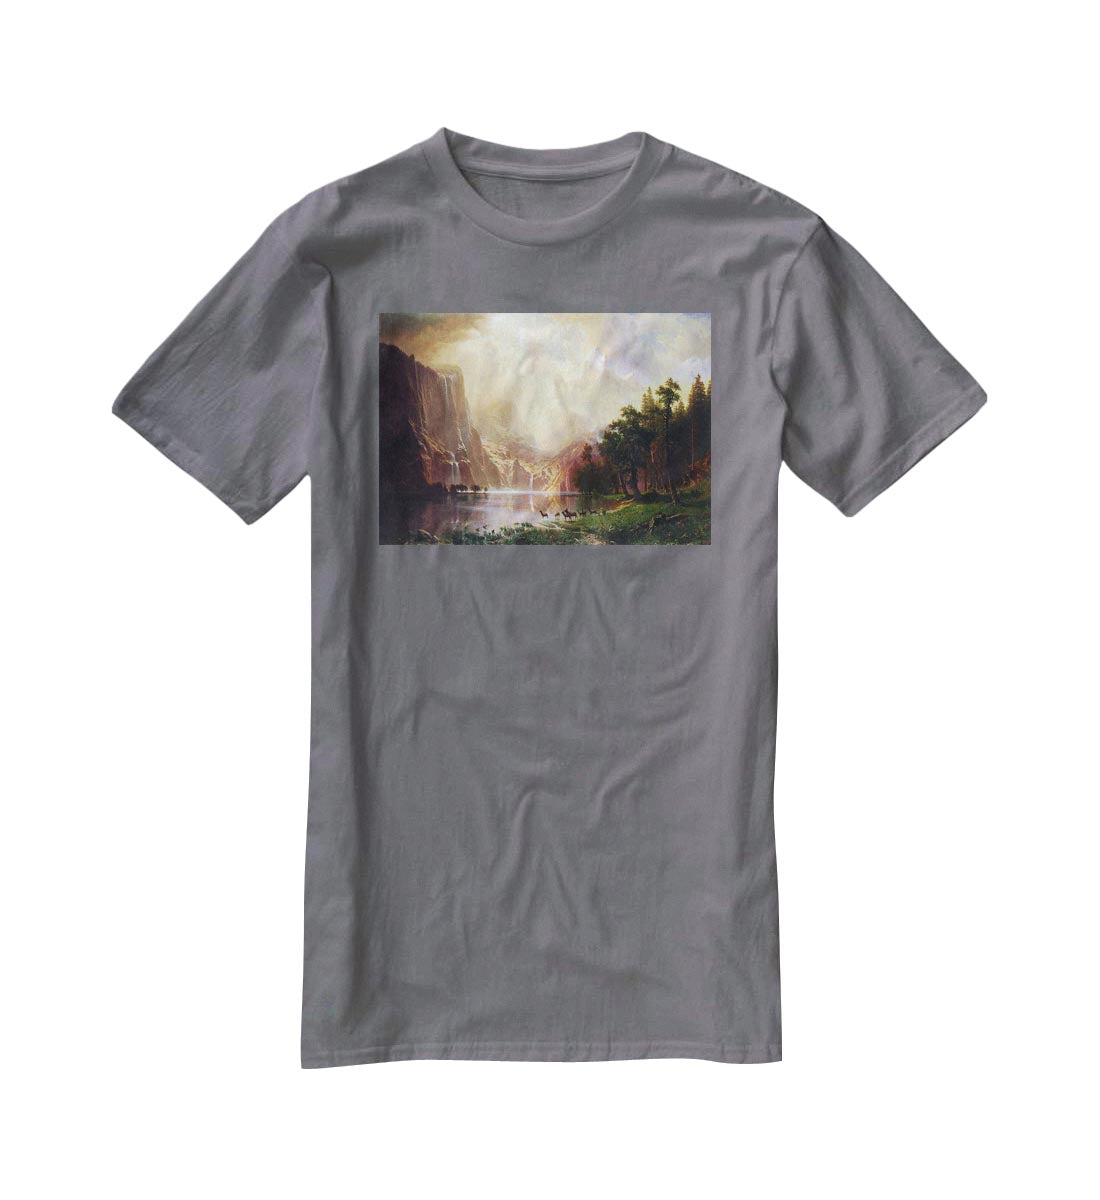 Between the Sierra Nevada Mountains by Bierstadt T-Shirt - Canvas Art Rocks - 3